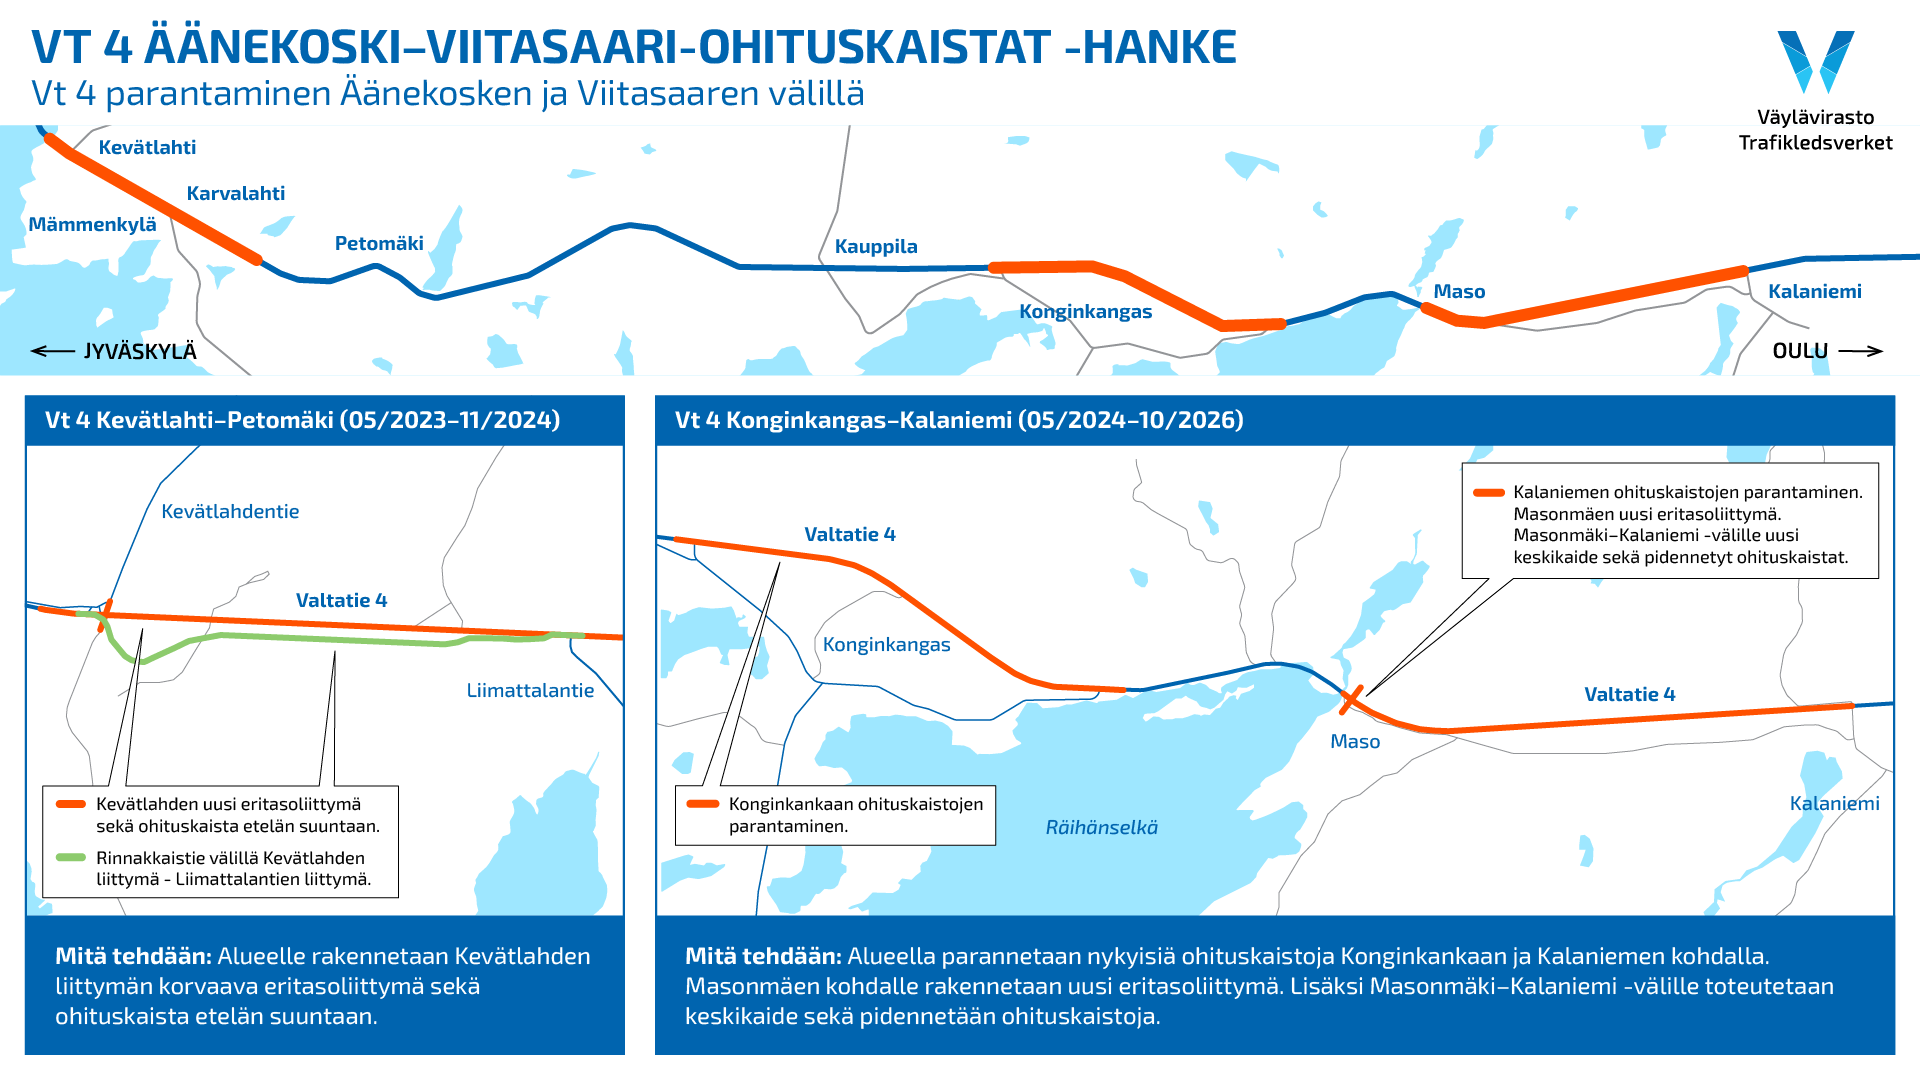 Karttakuva Vt 4 Äänekoski-Viitasaari-hankkeen tietöistä